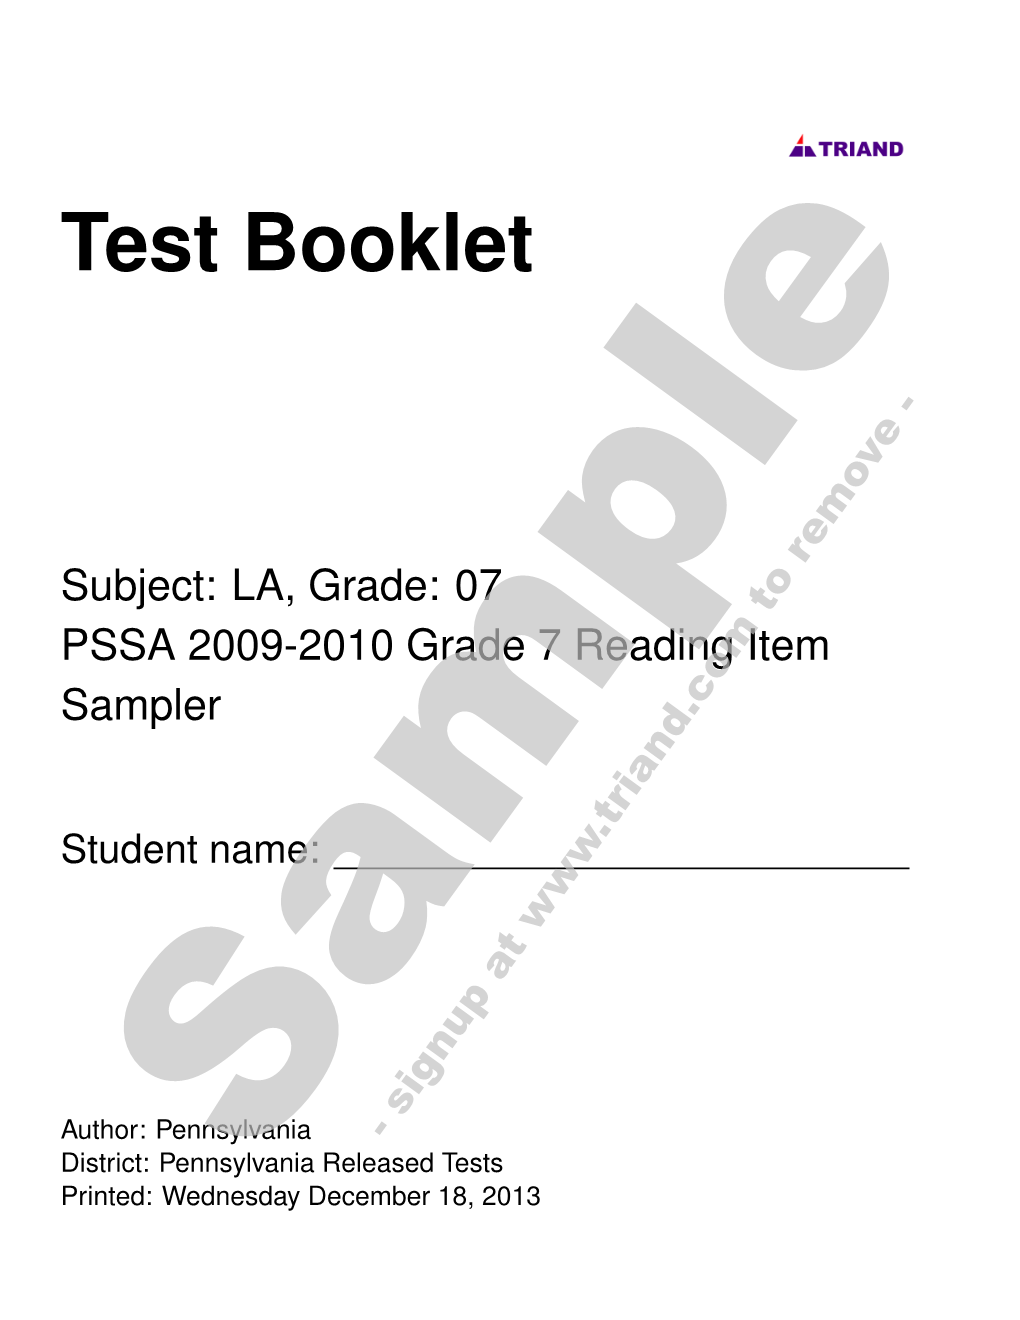 07 PSSA 2009-2010 Grade 7 Reading Item Sampler